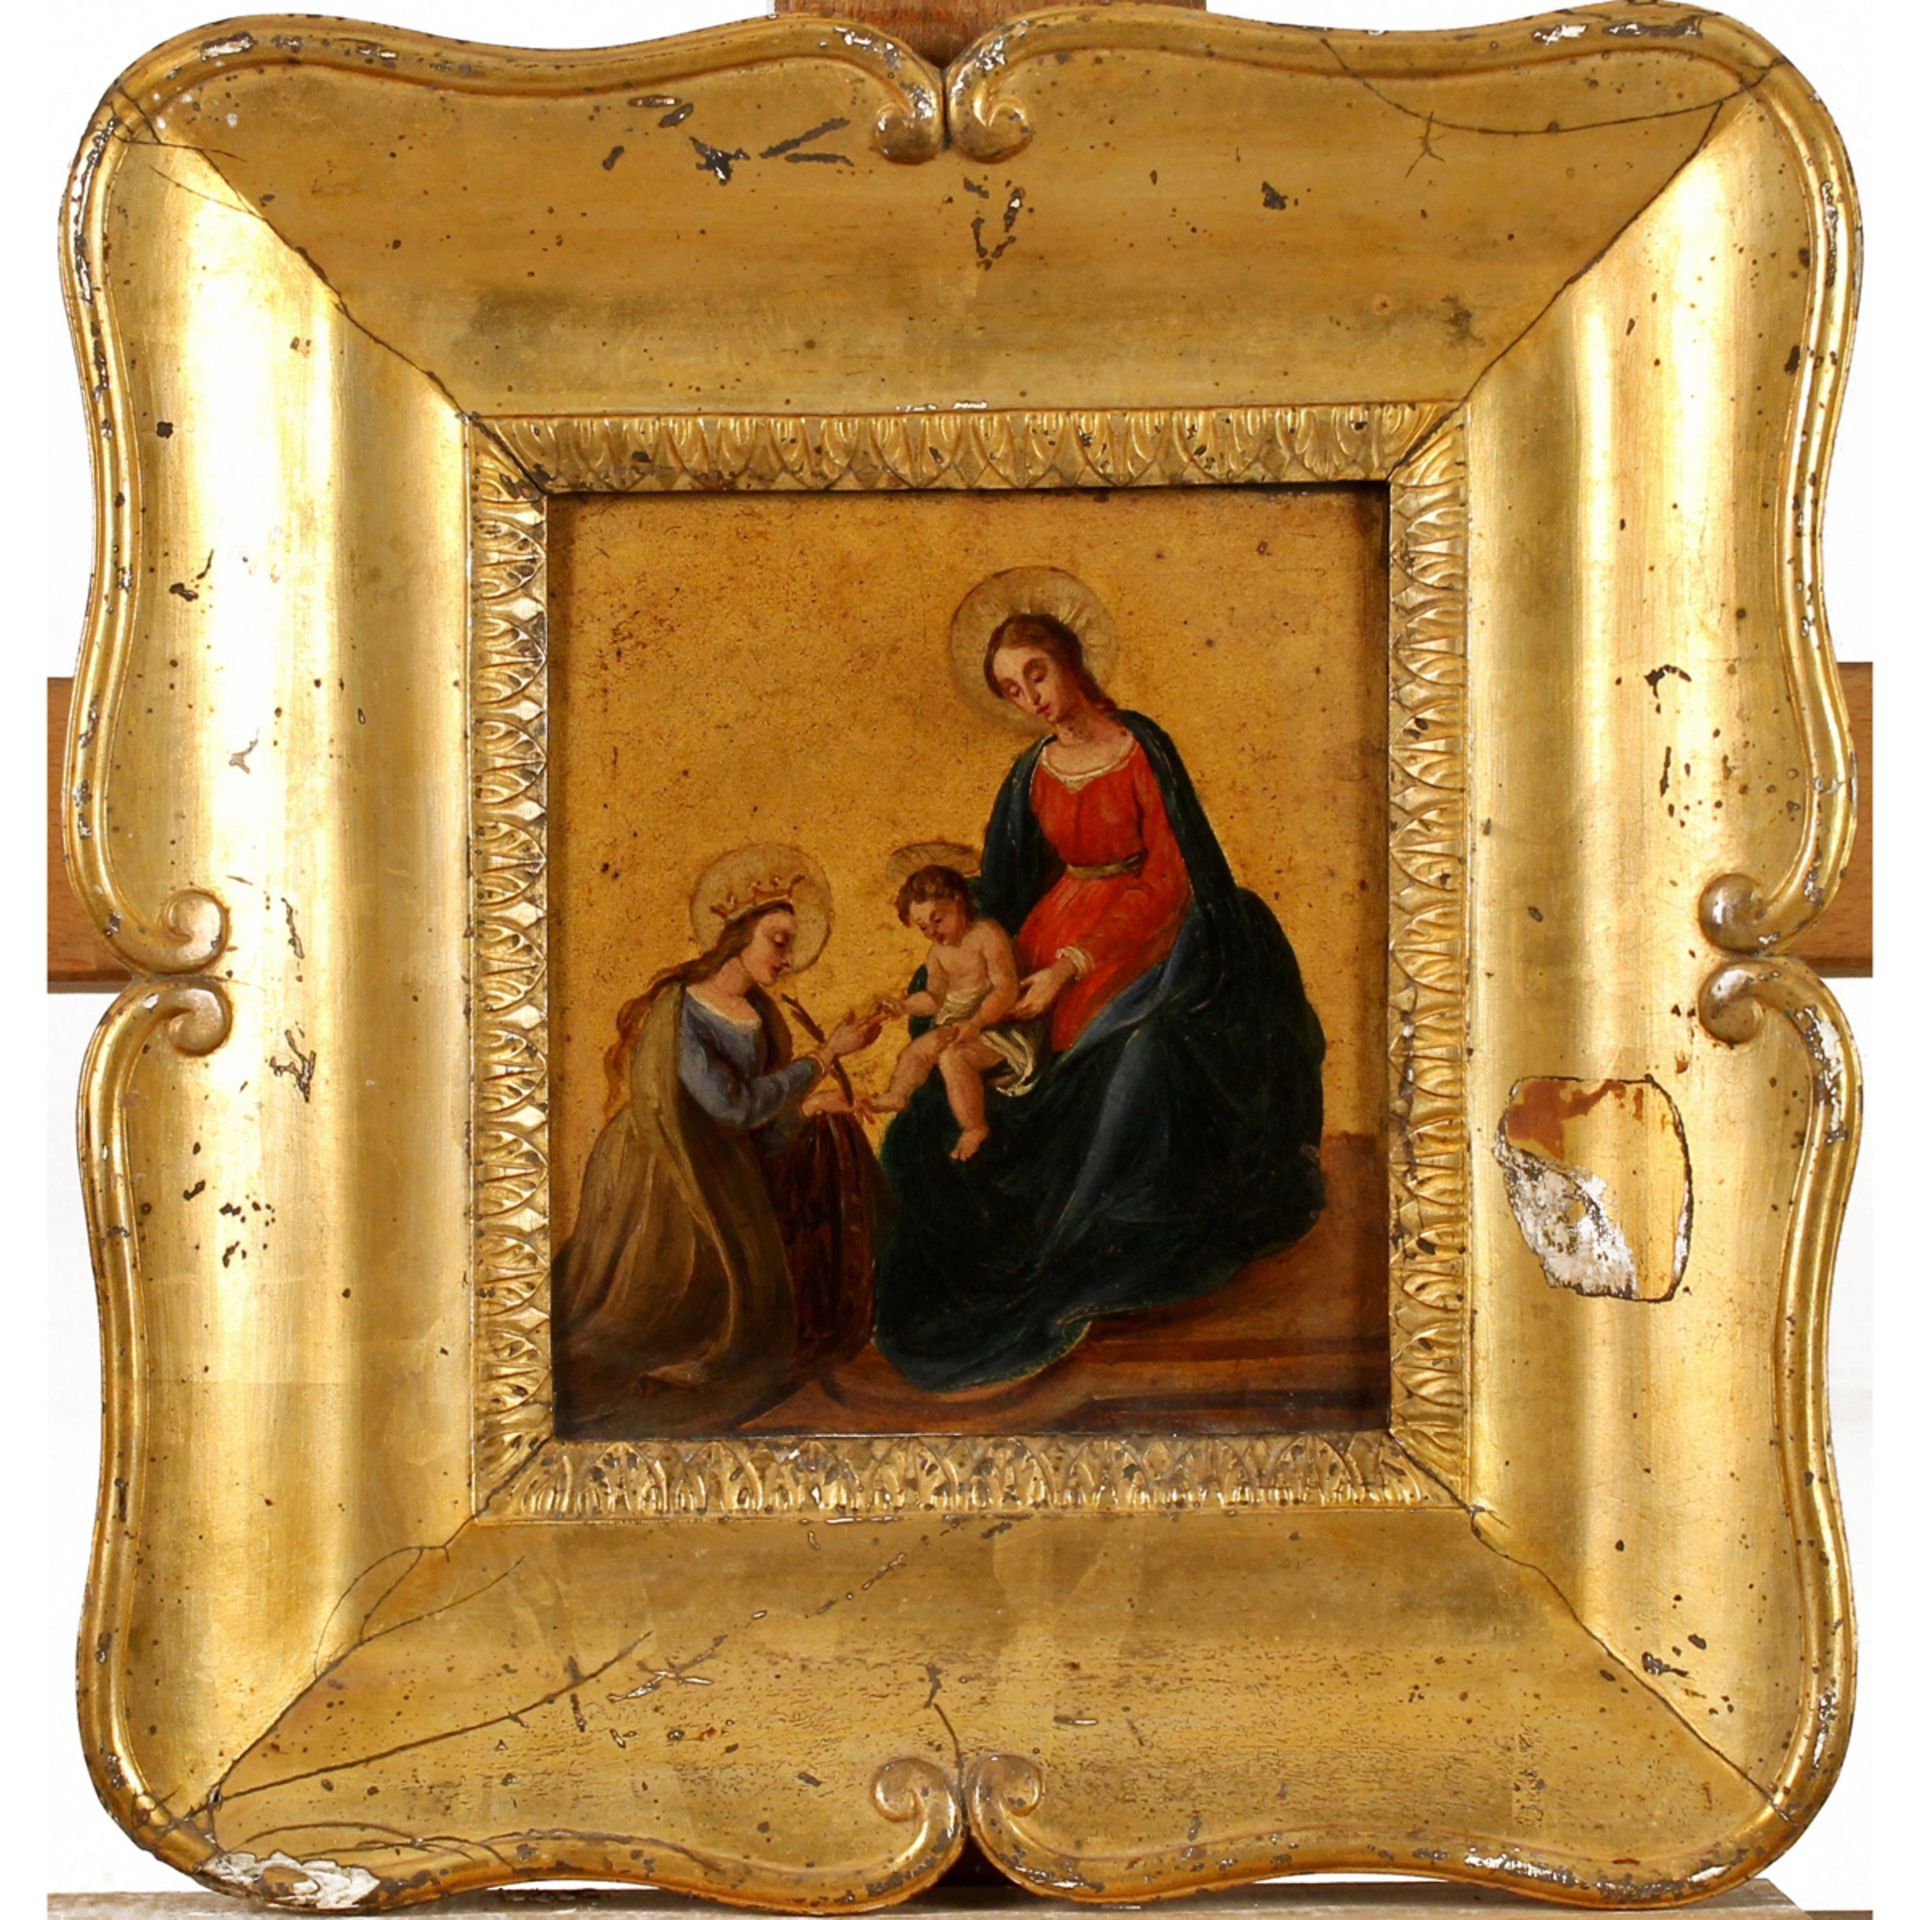 Annetta Turrisi Colonna (1820/1848) “Adorazione di Gesù bambino” - "Adoration of the baby Jesus"